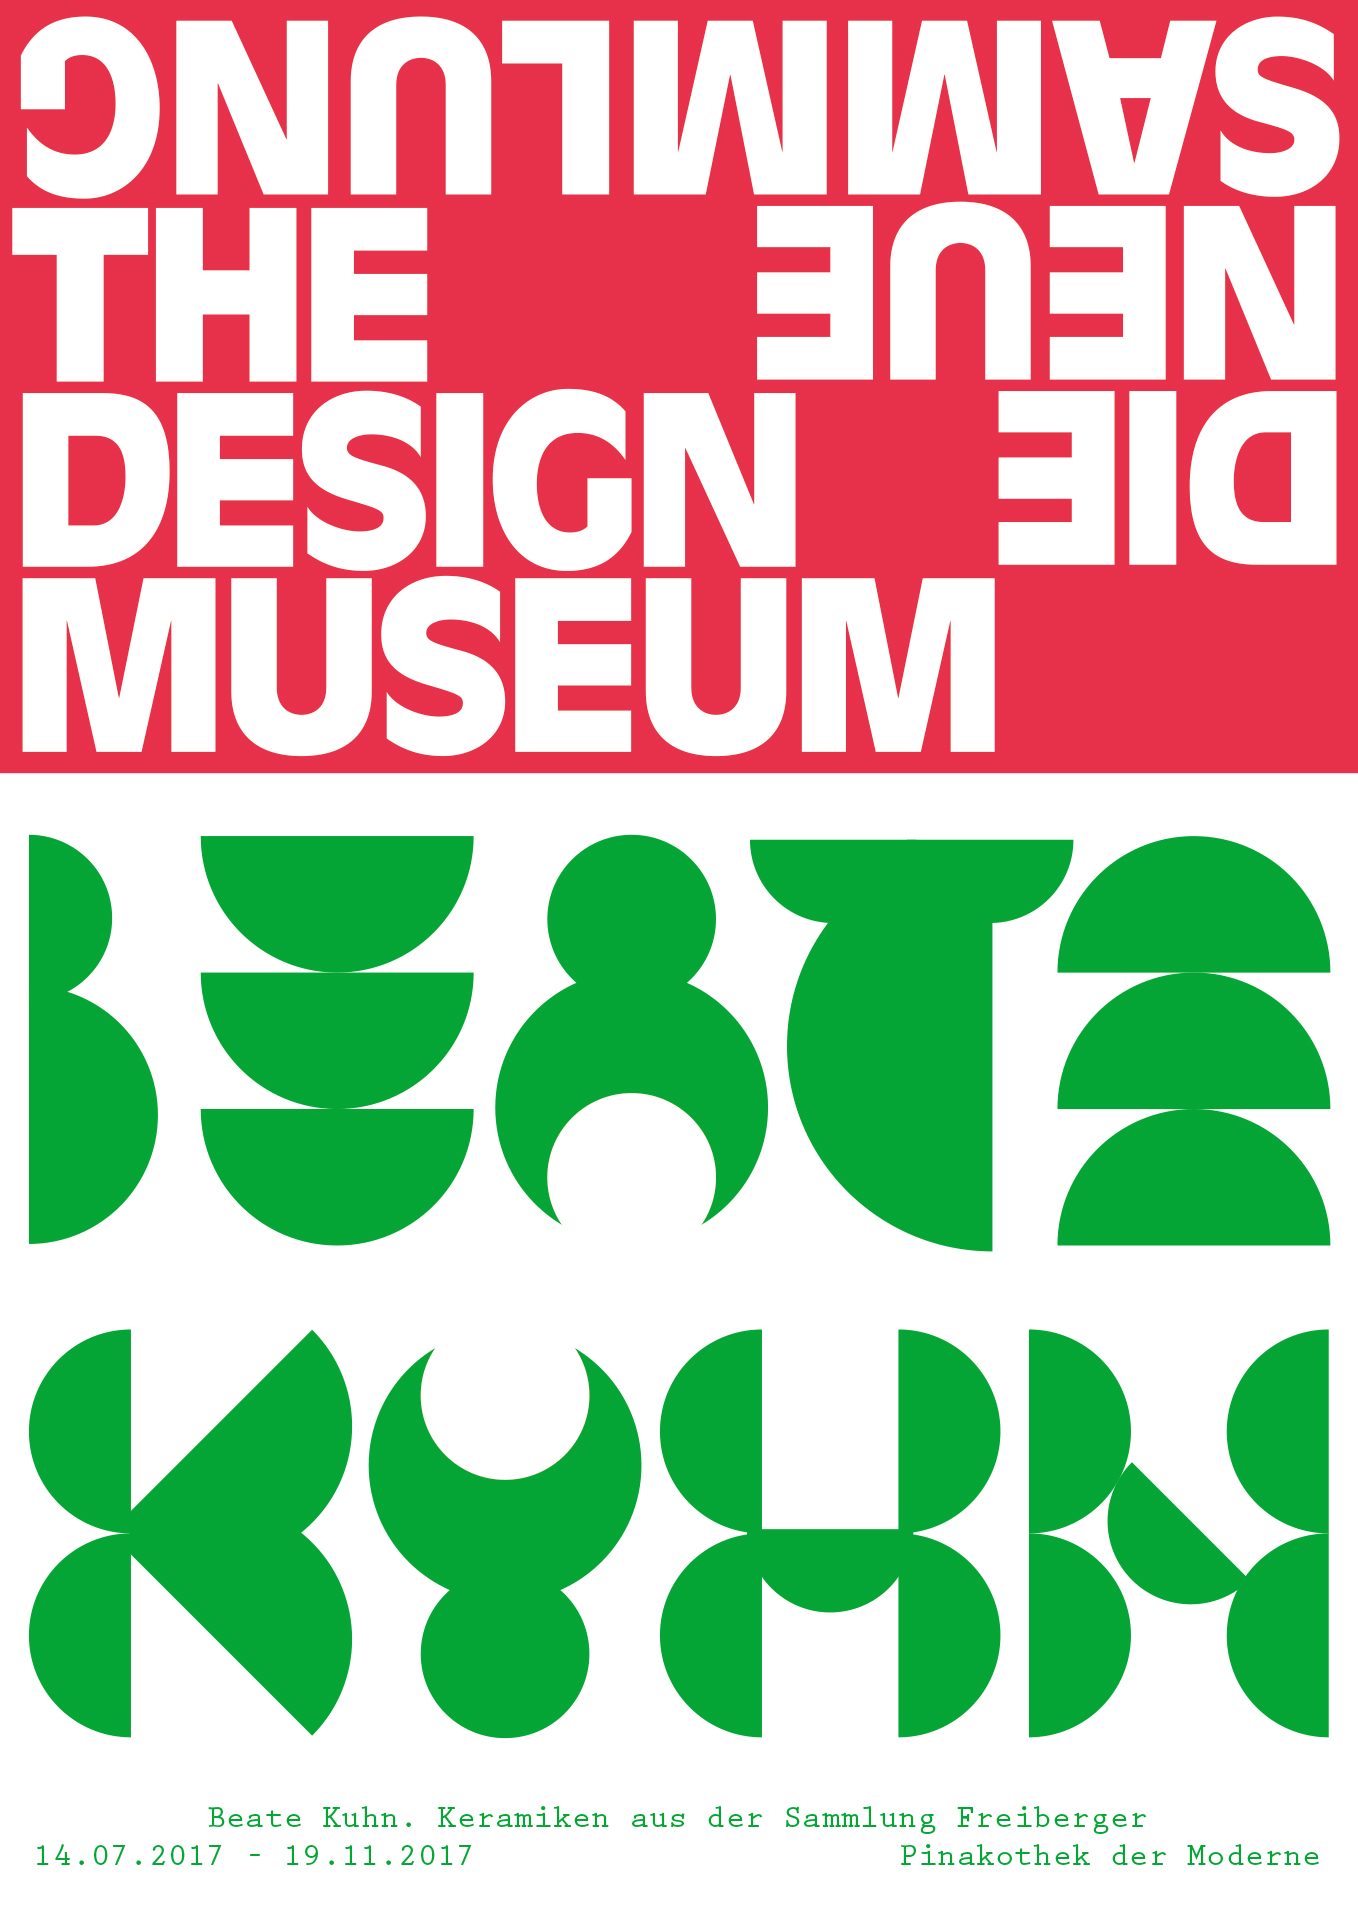 Ausstellungsplakat. Das rote Logo von Die Neue Sammlung im oberen Drittel. Darunter der Schriftzug Beate Kuhn aus grünen Kreissegmenten zusammengefügt. Am unteren Rand Titel und Laufzeit der Ausstellung.